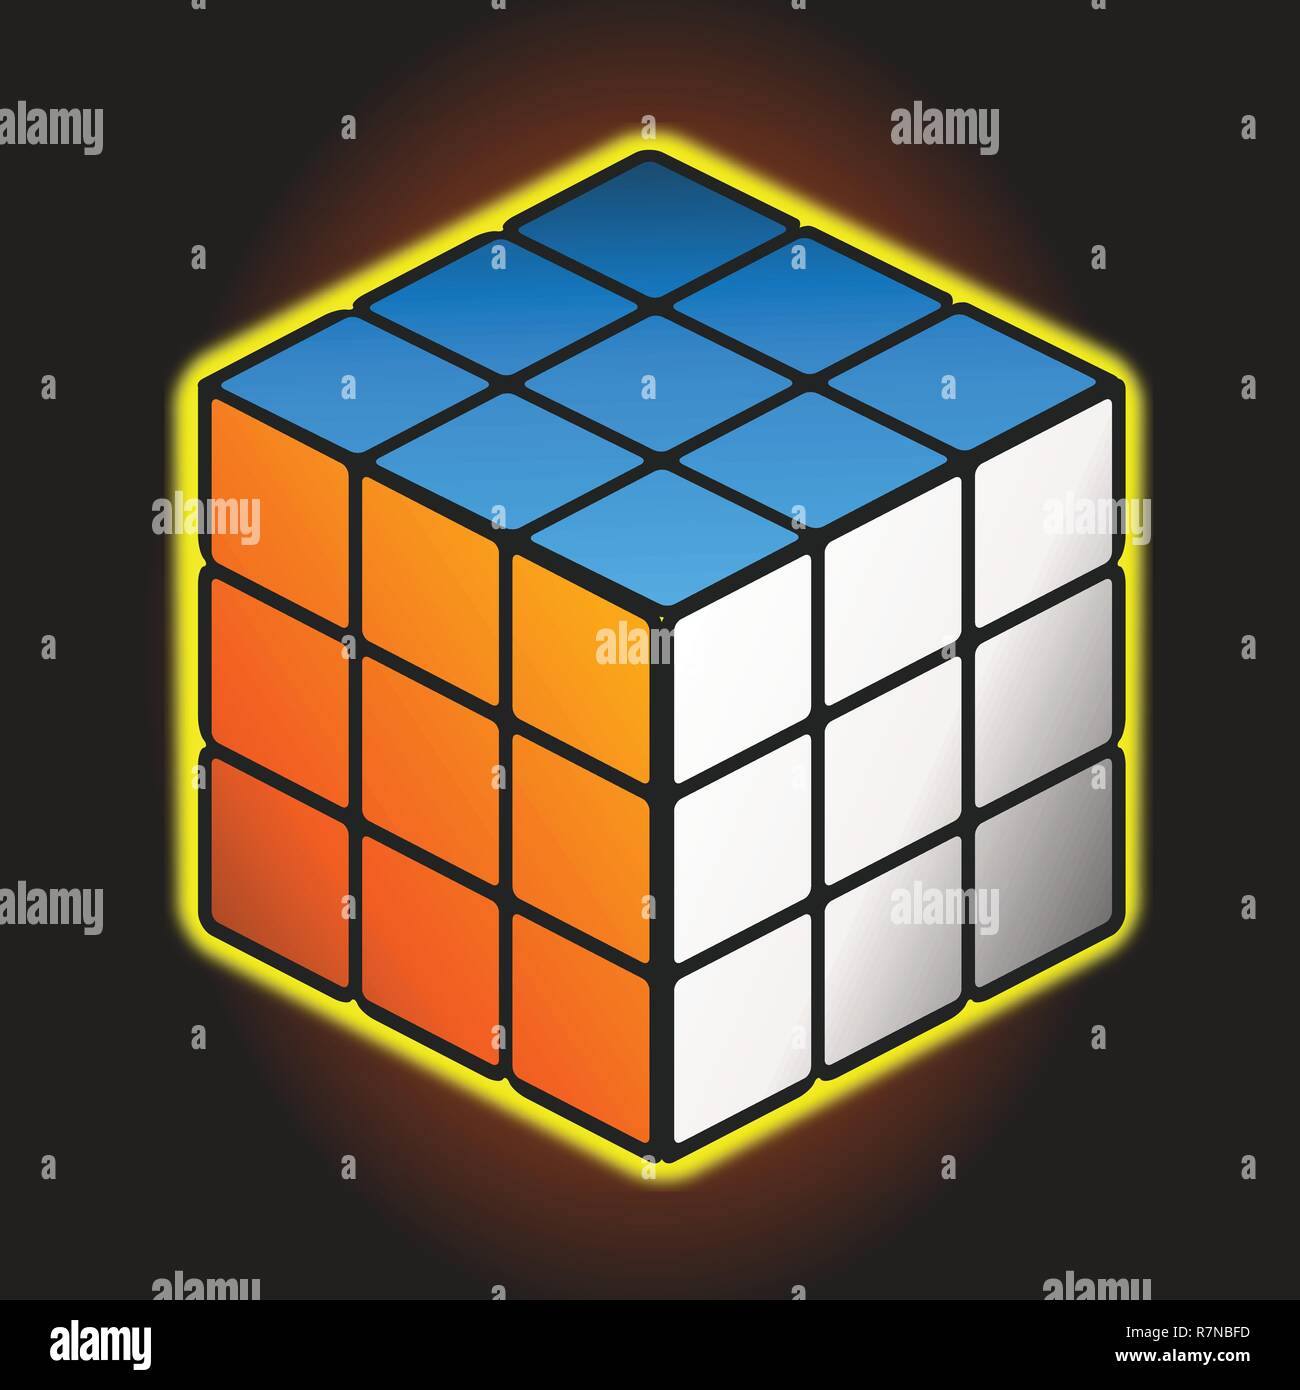 Rubiks cube images vectorielles, Rubiks cube vecteurs libres de